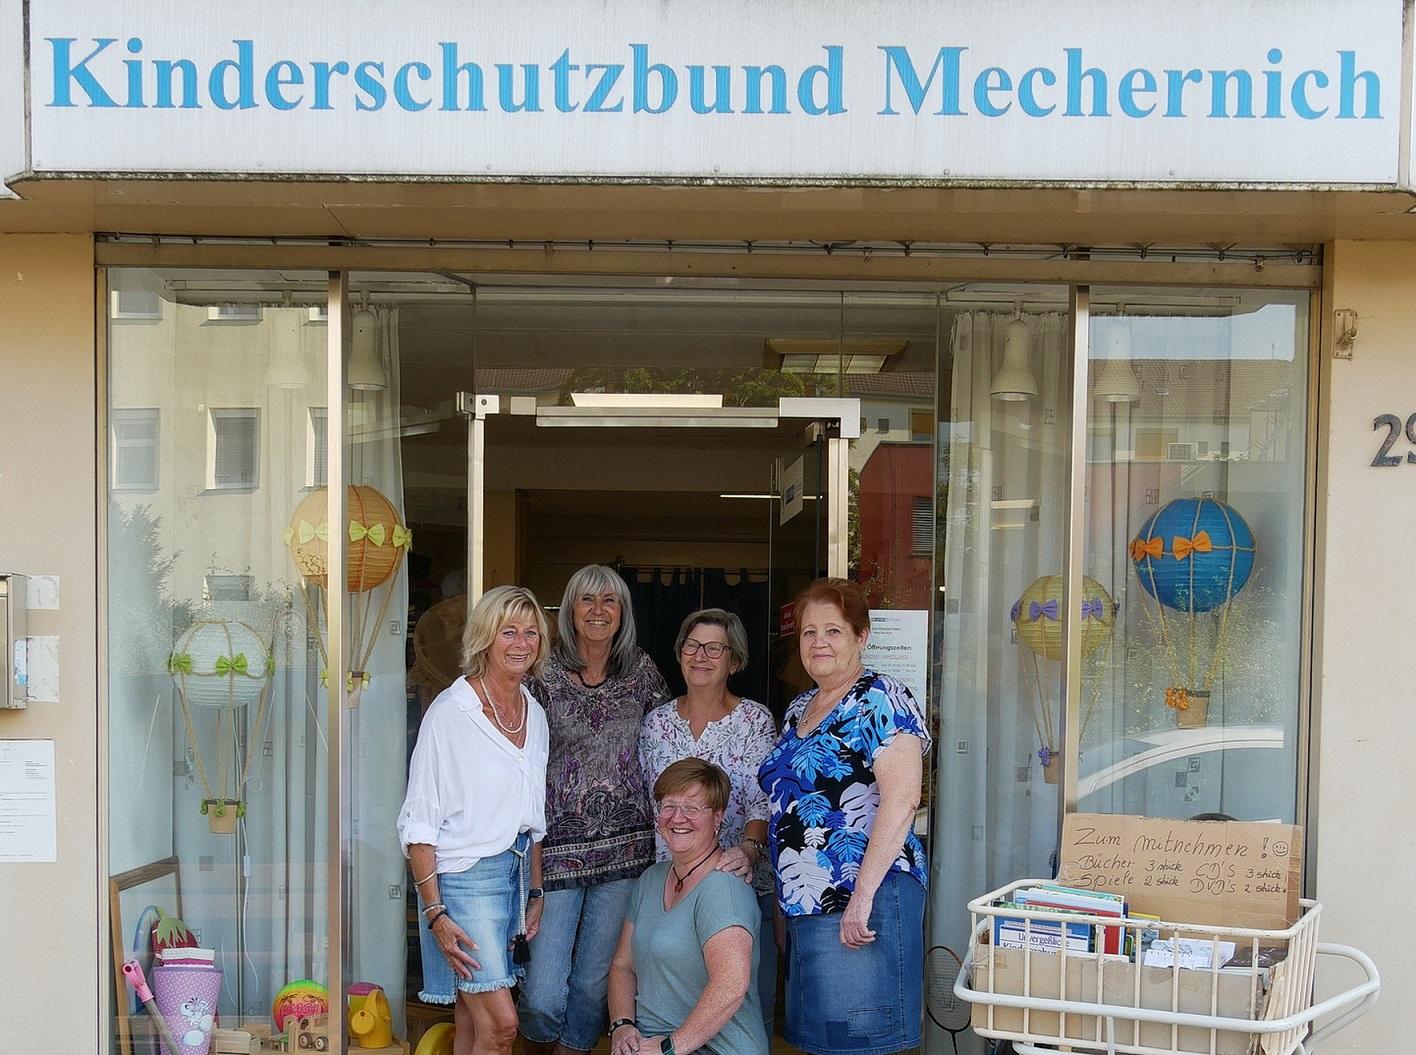 Der Kleiderladen des Kinderschutzbundes Mechernich in der Bahnstraße bleibt in der ersten Adventwoche sowie zwischen Weihnachten und Dreikönige geschlossen.